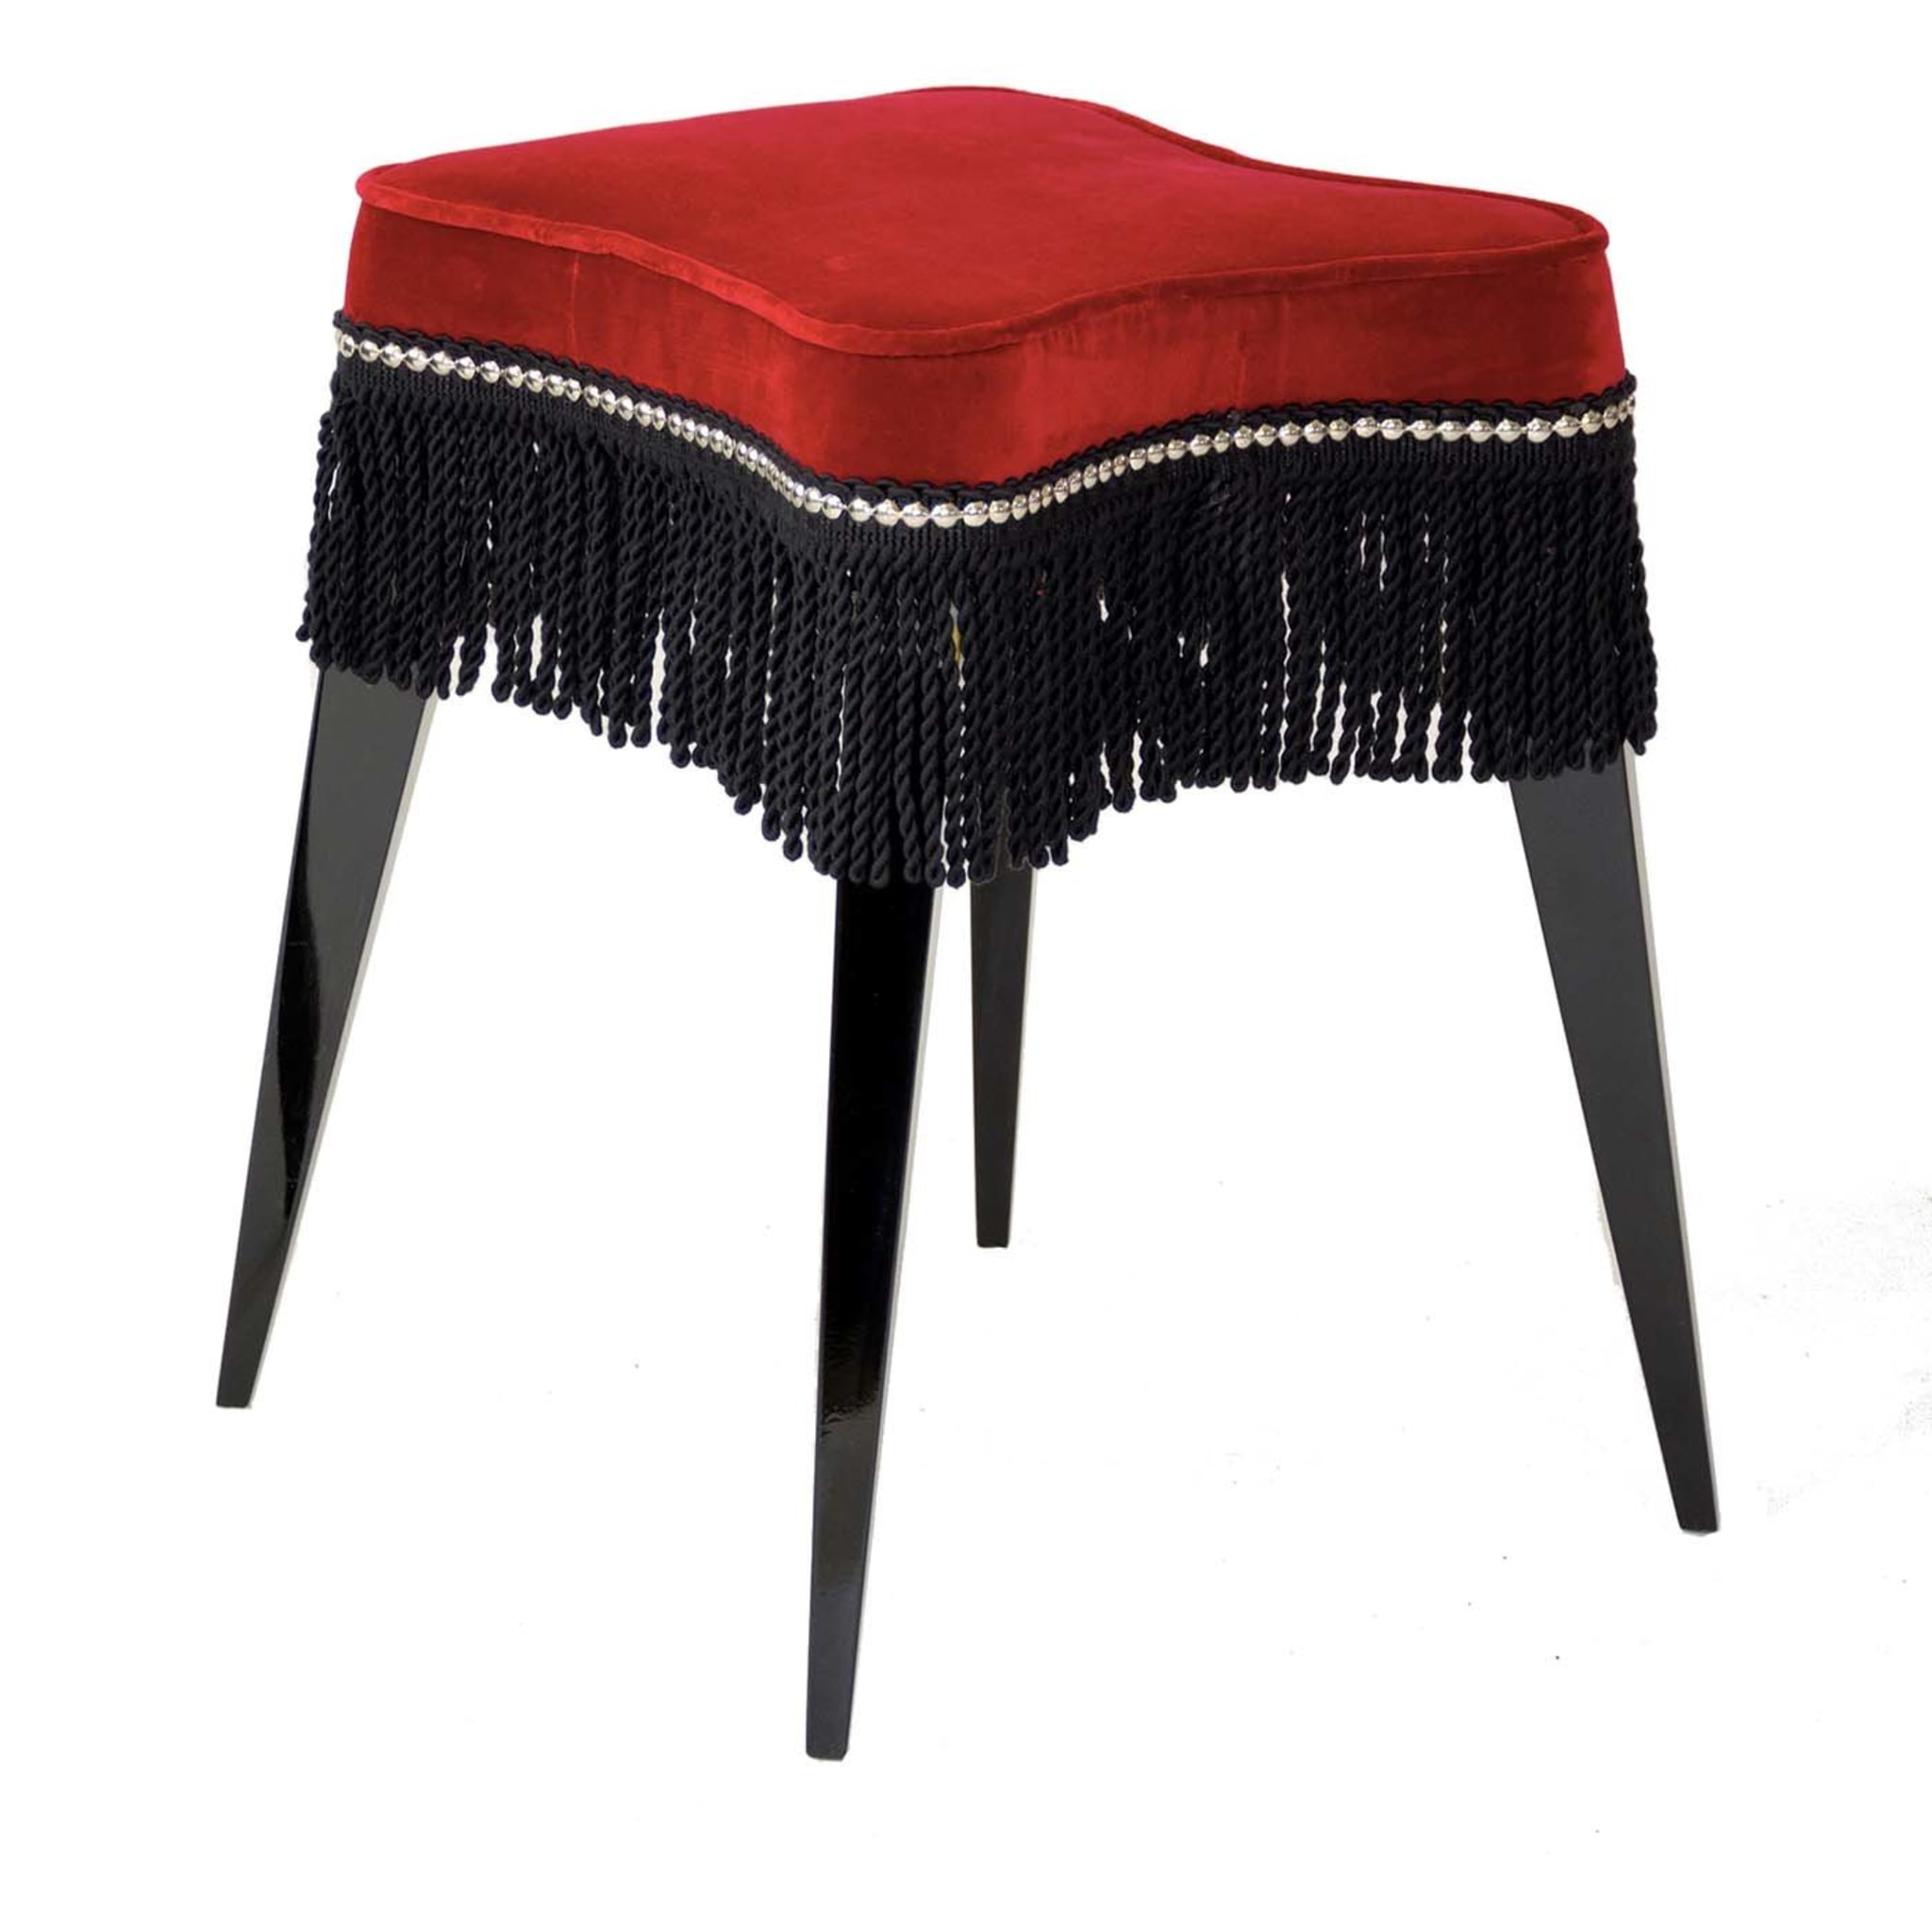 Burlesque stool in red velvet - Main view